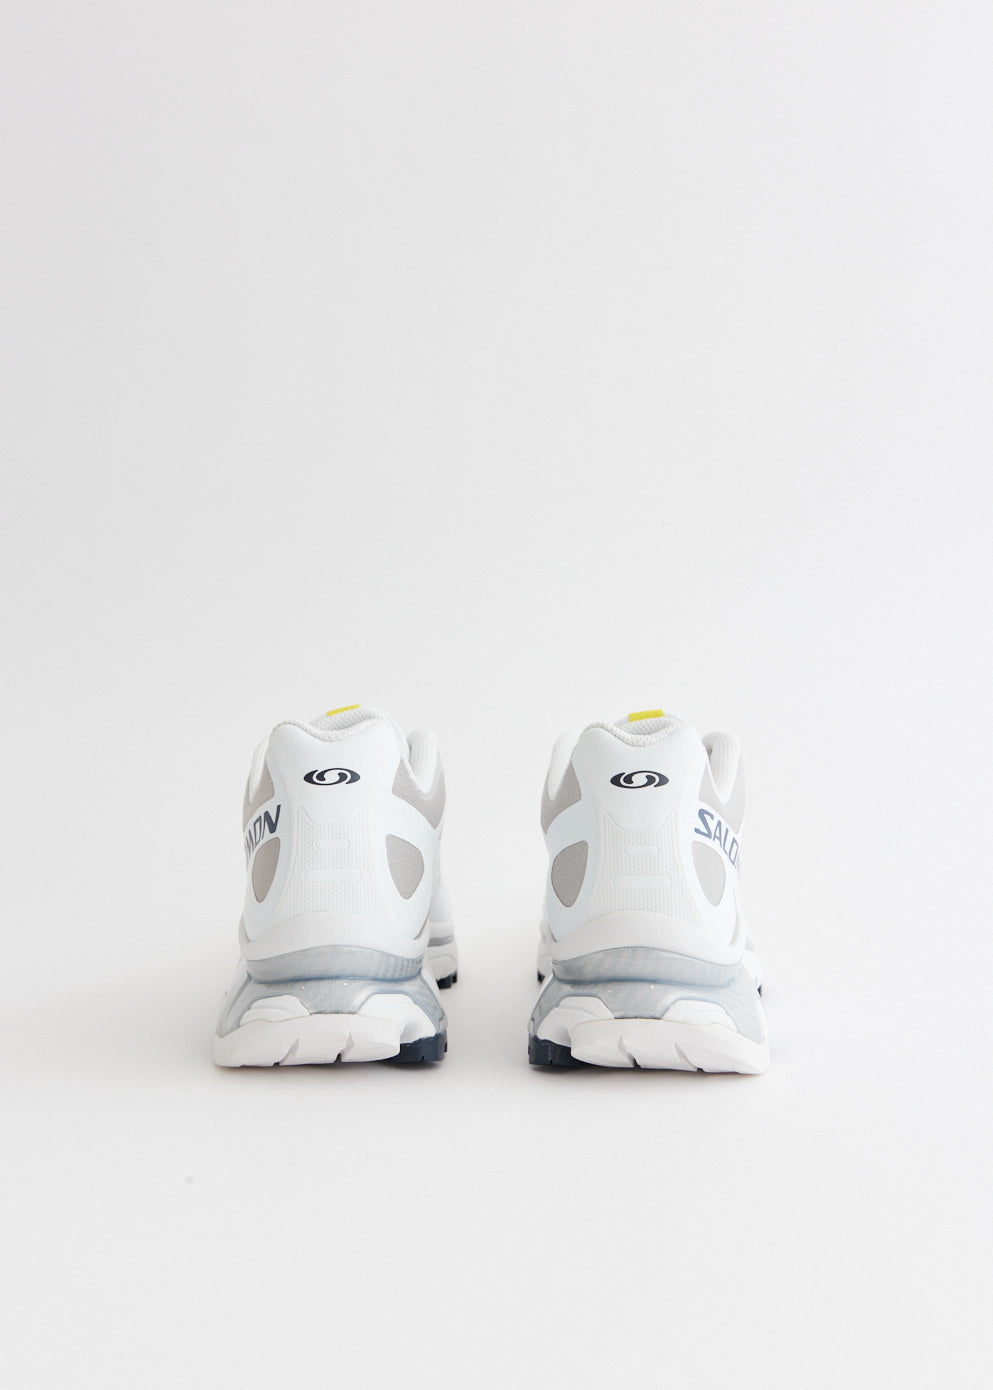 XT-4 OG 'White' Sneakers